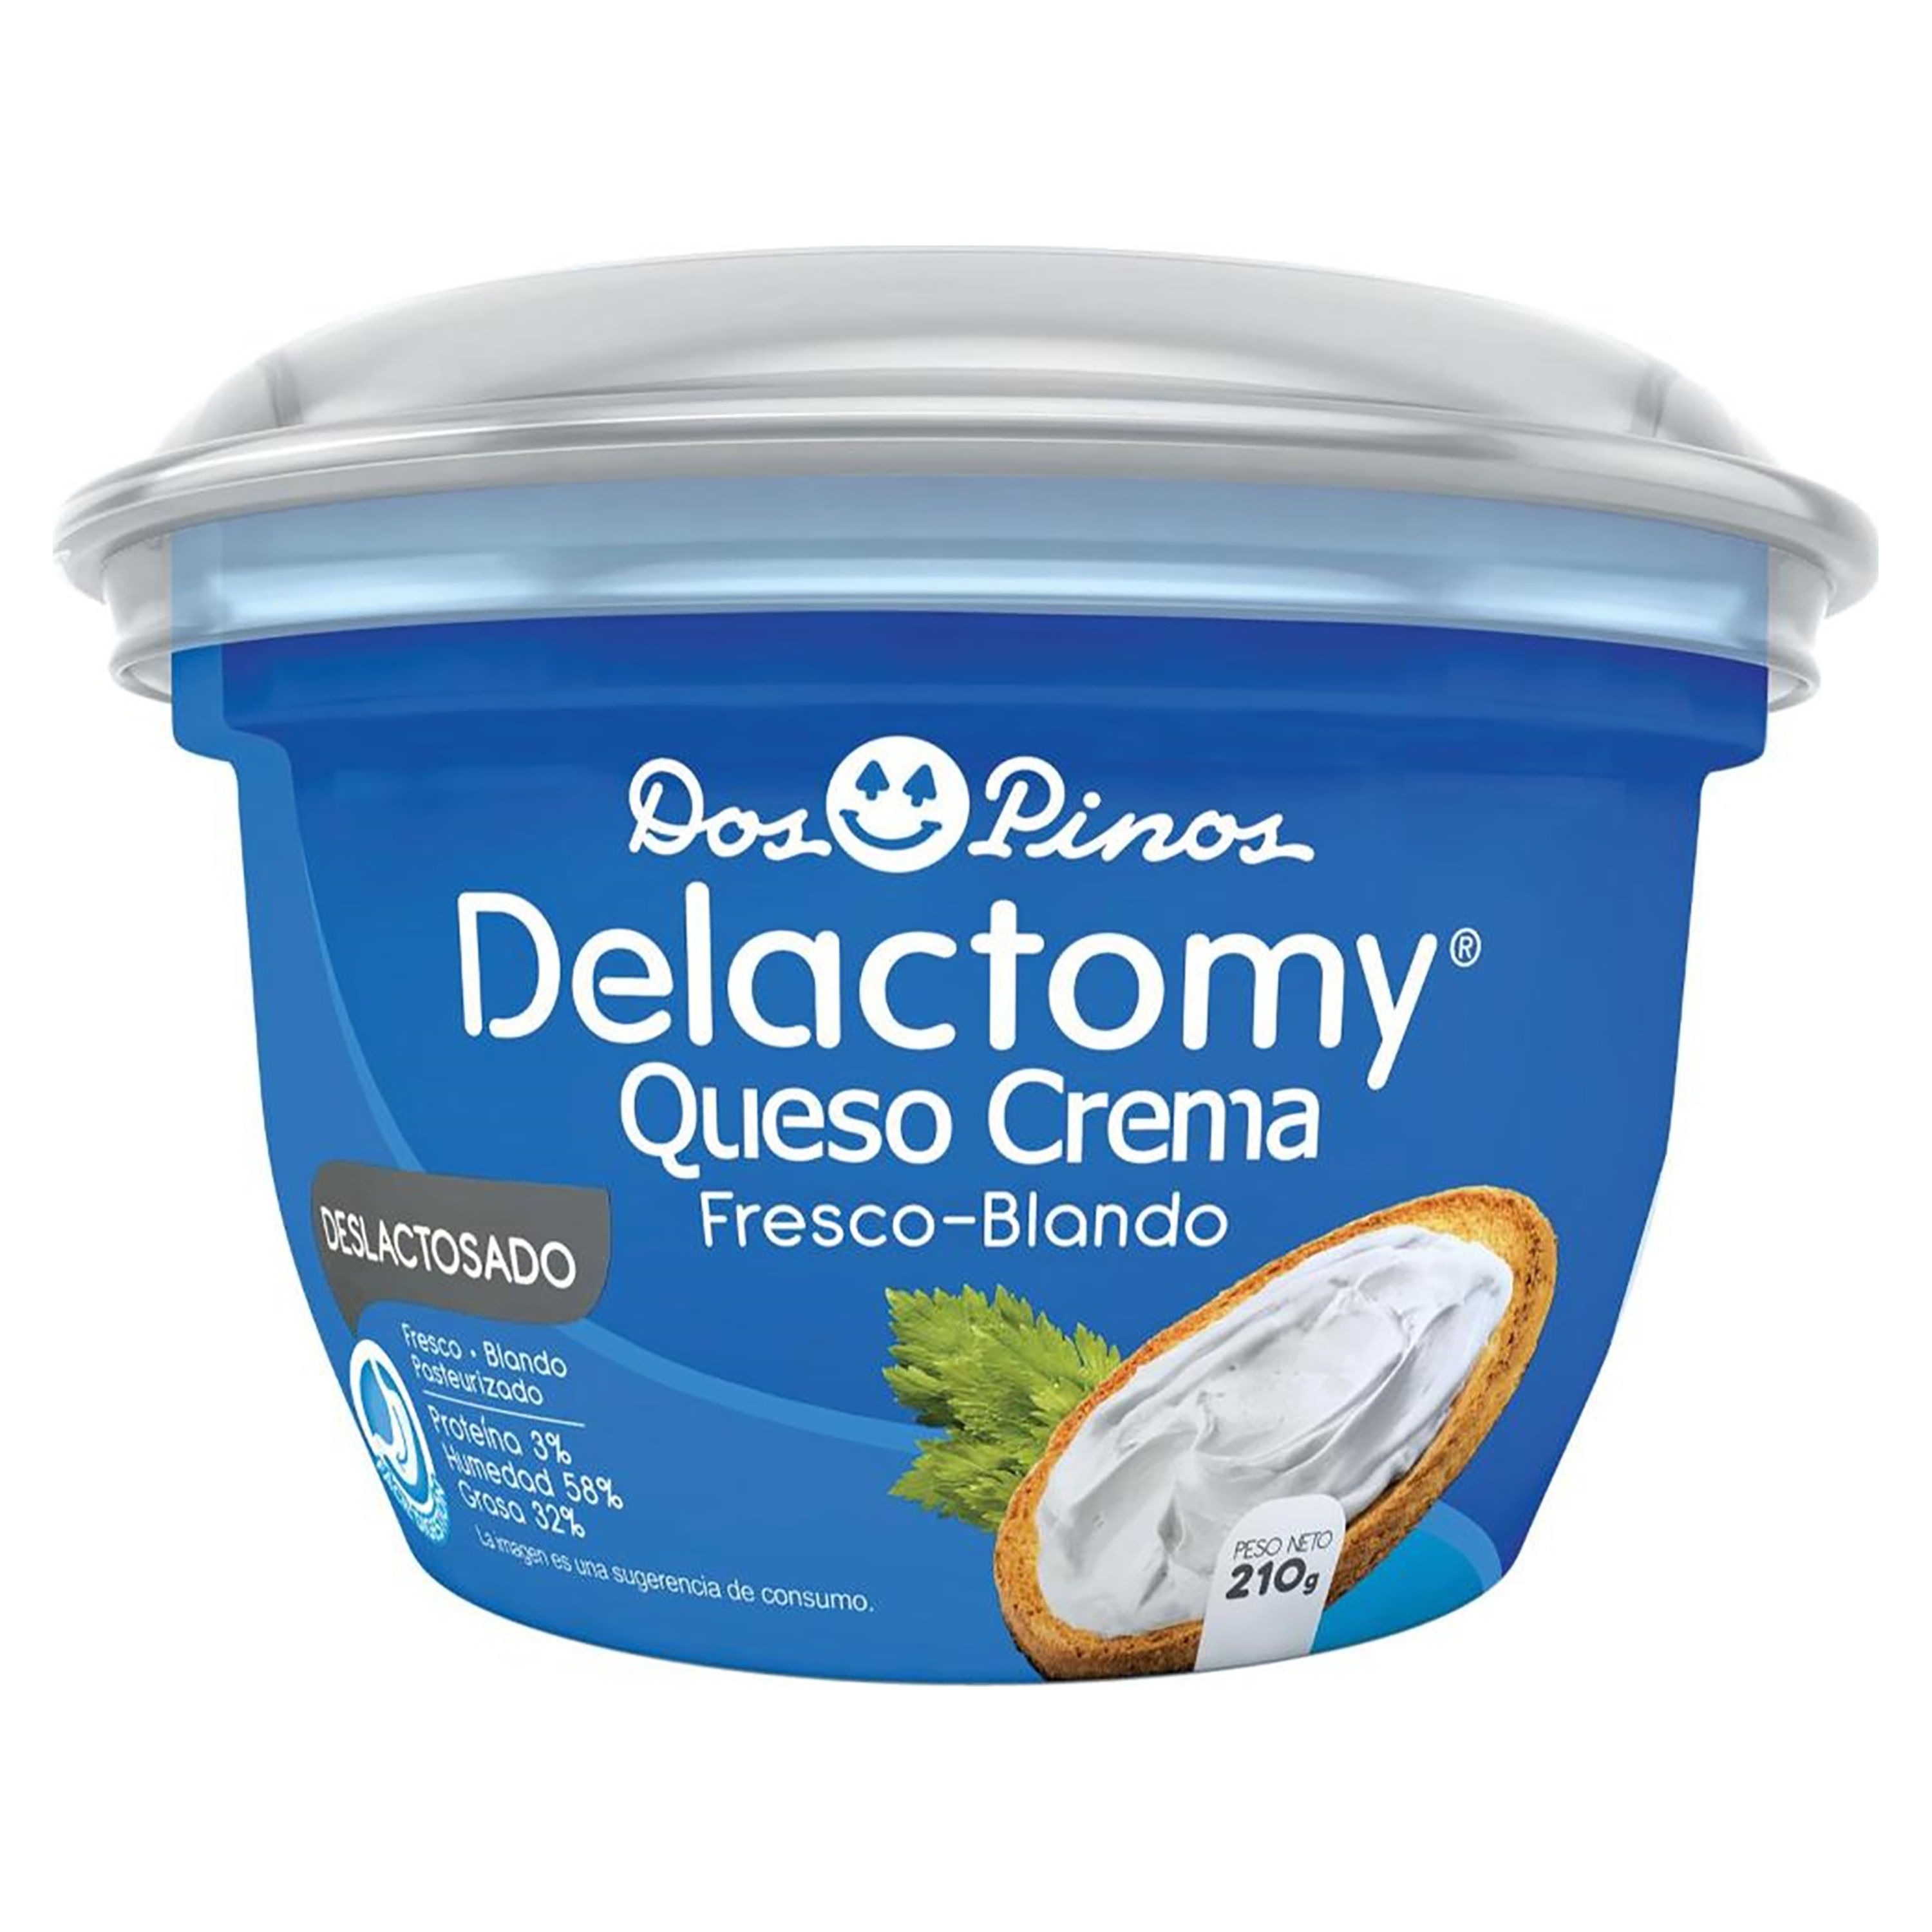 Queso-Crema-Dos-Pinos-Delactomy-210-Gr-1-14988